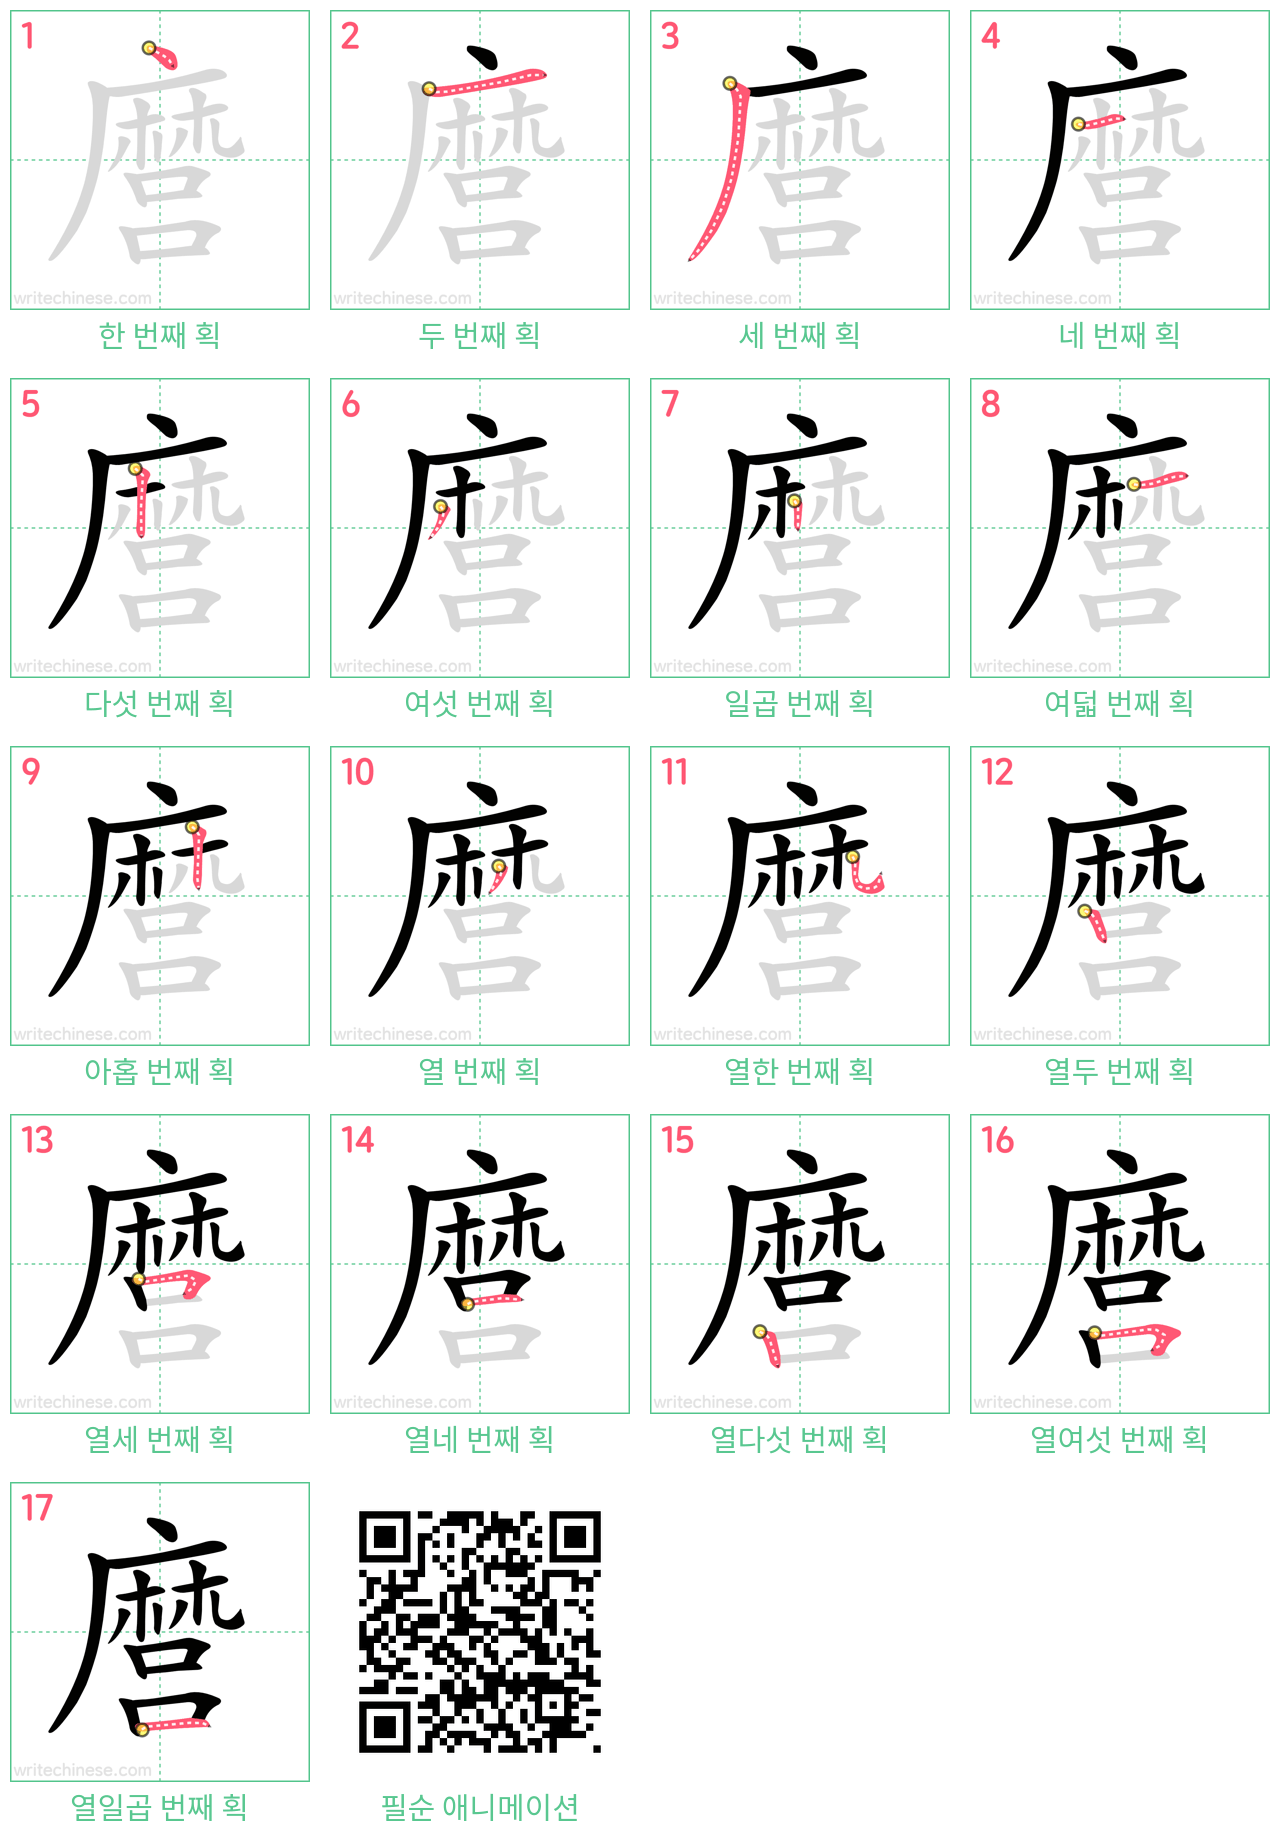 麿 step-by-step stroke order diagrams